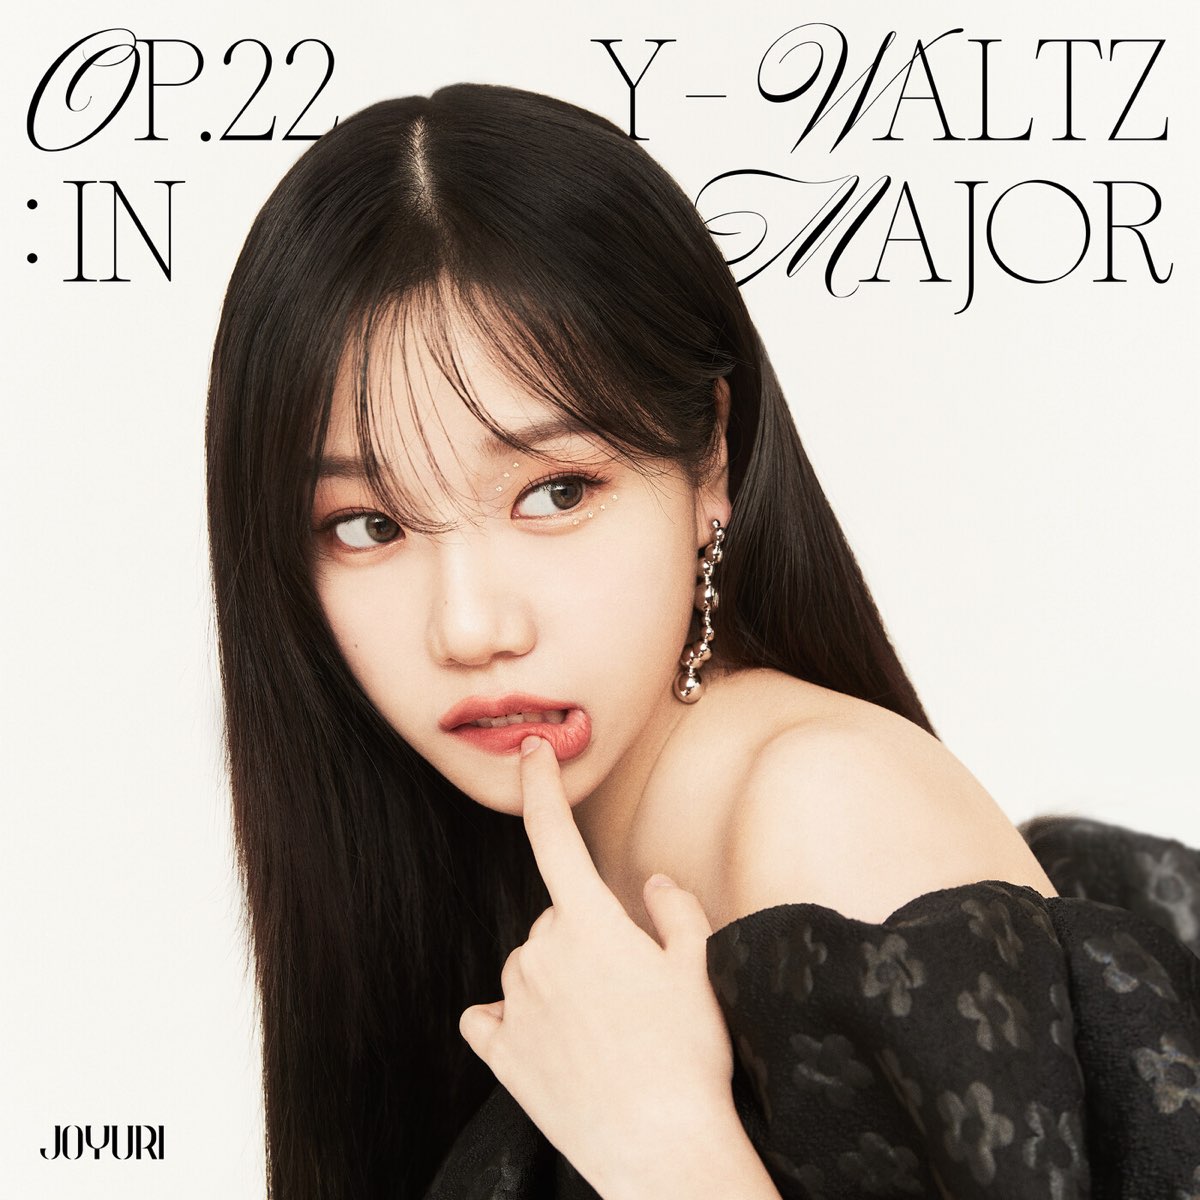 Op.22 Y-Waltz : in Major - EP by JO YURI on Apple Music